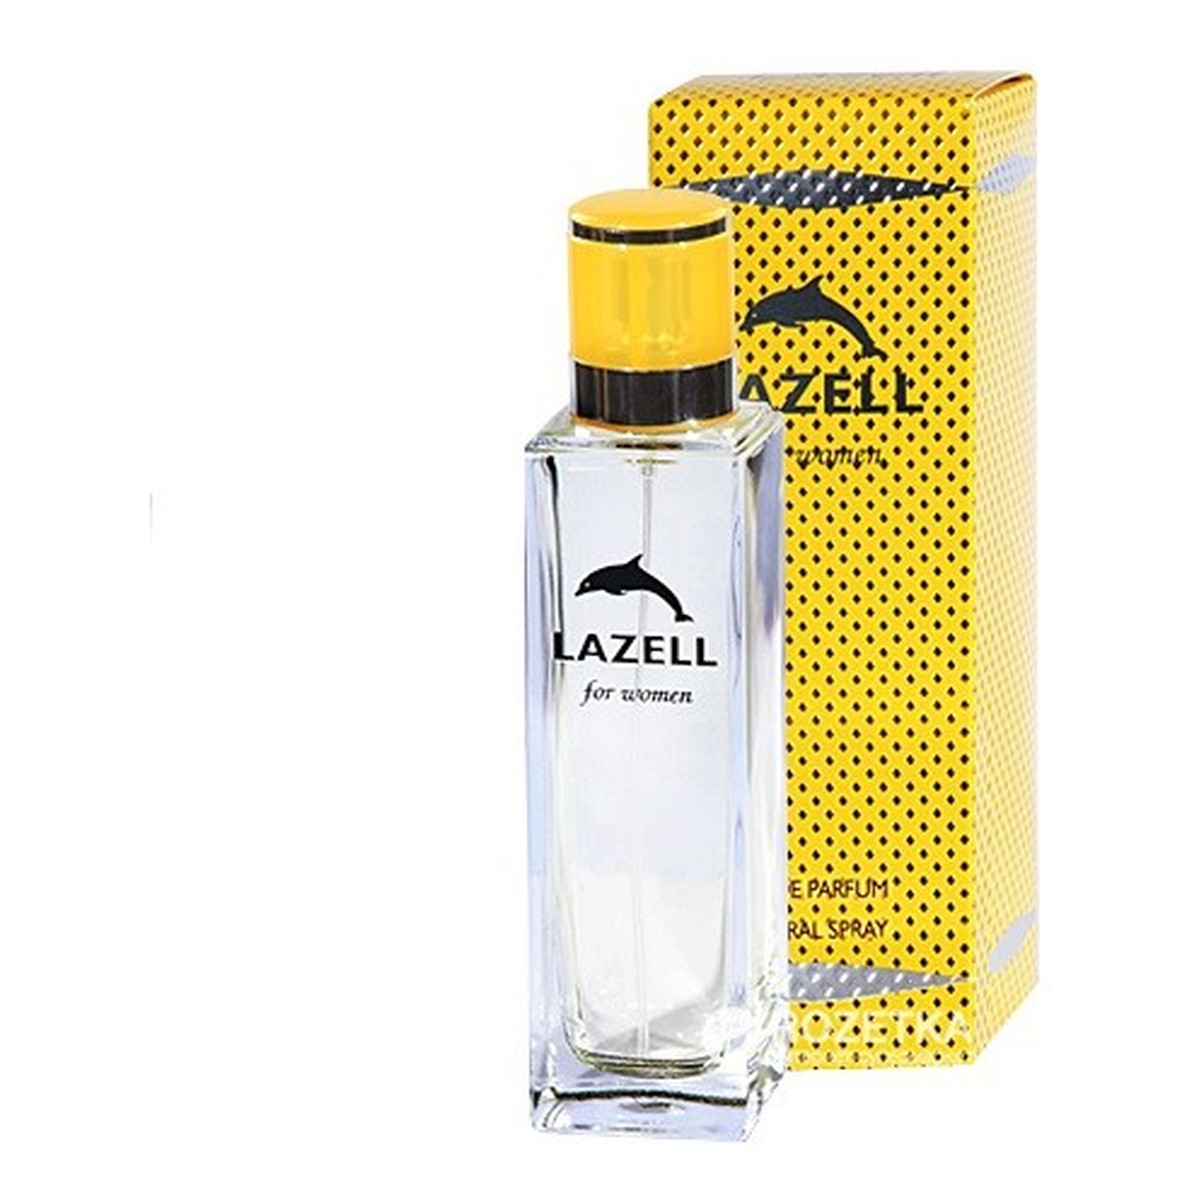 Lazell For Women Woda perfumowana 100ml